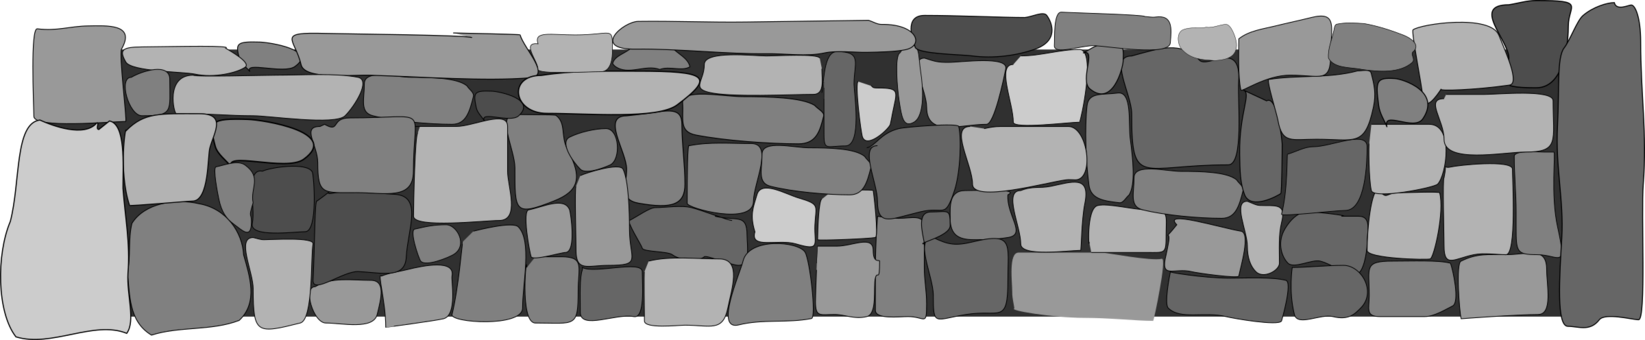 Imagen PNG de la pared de piedra de ladrillo